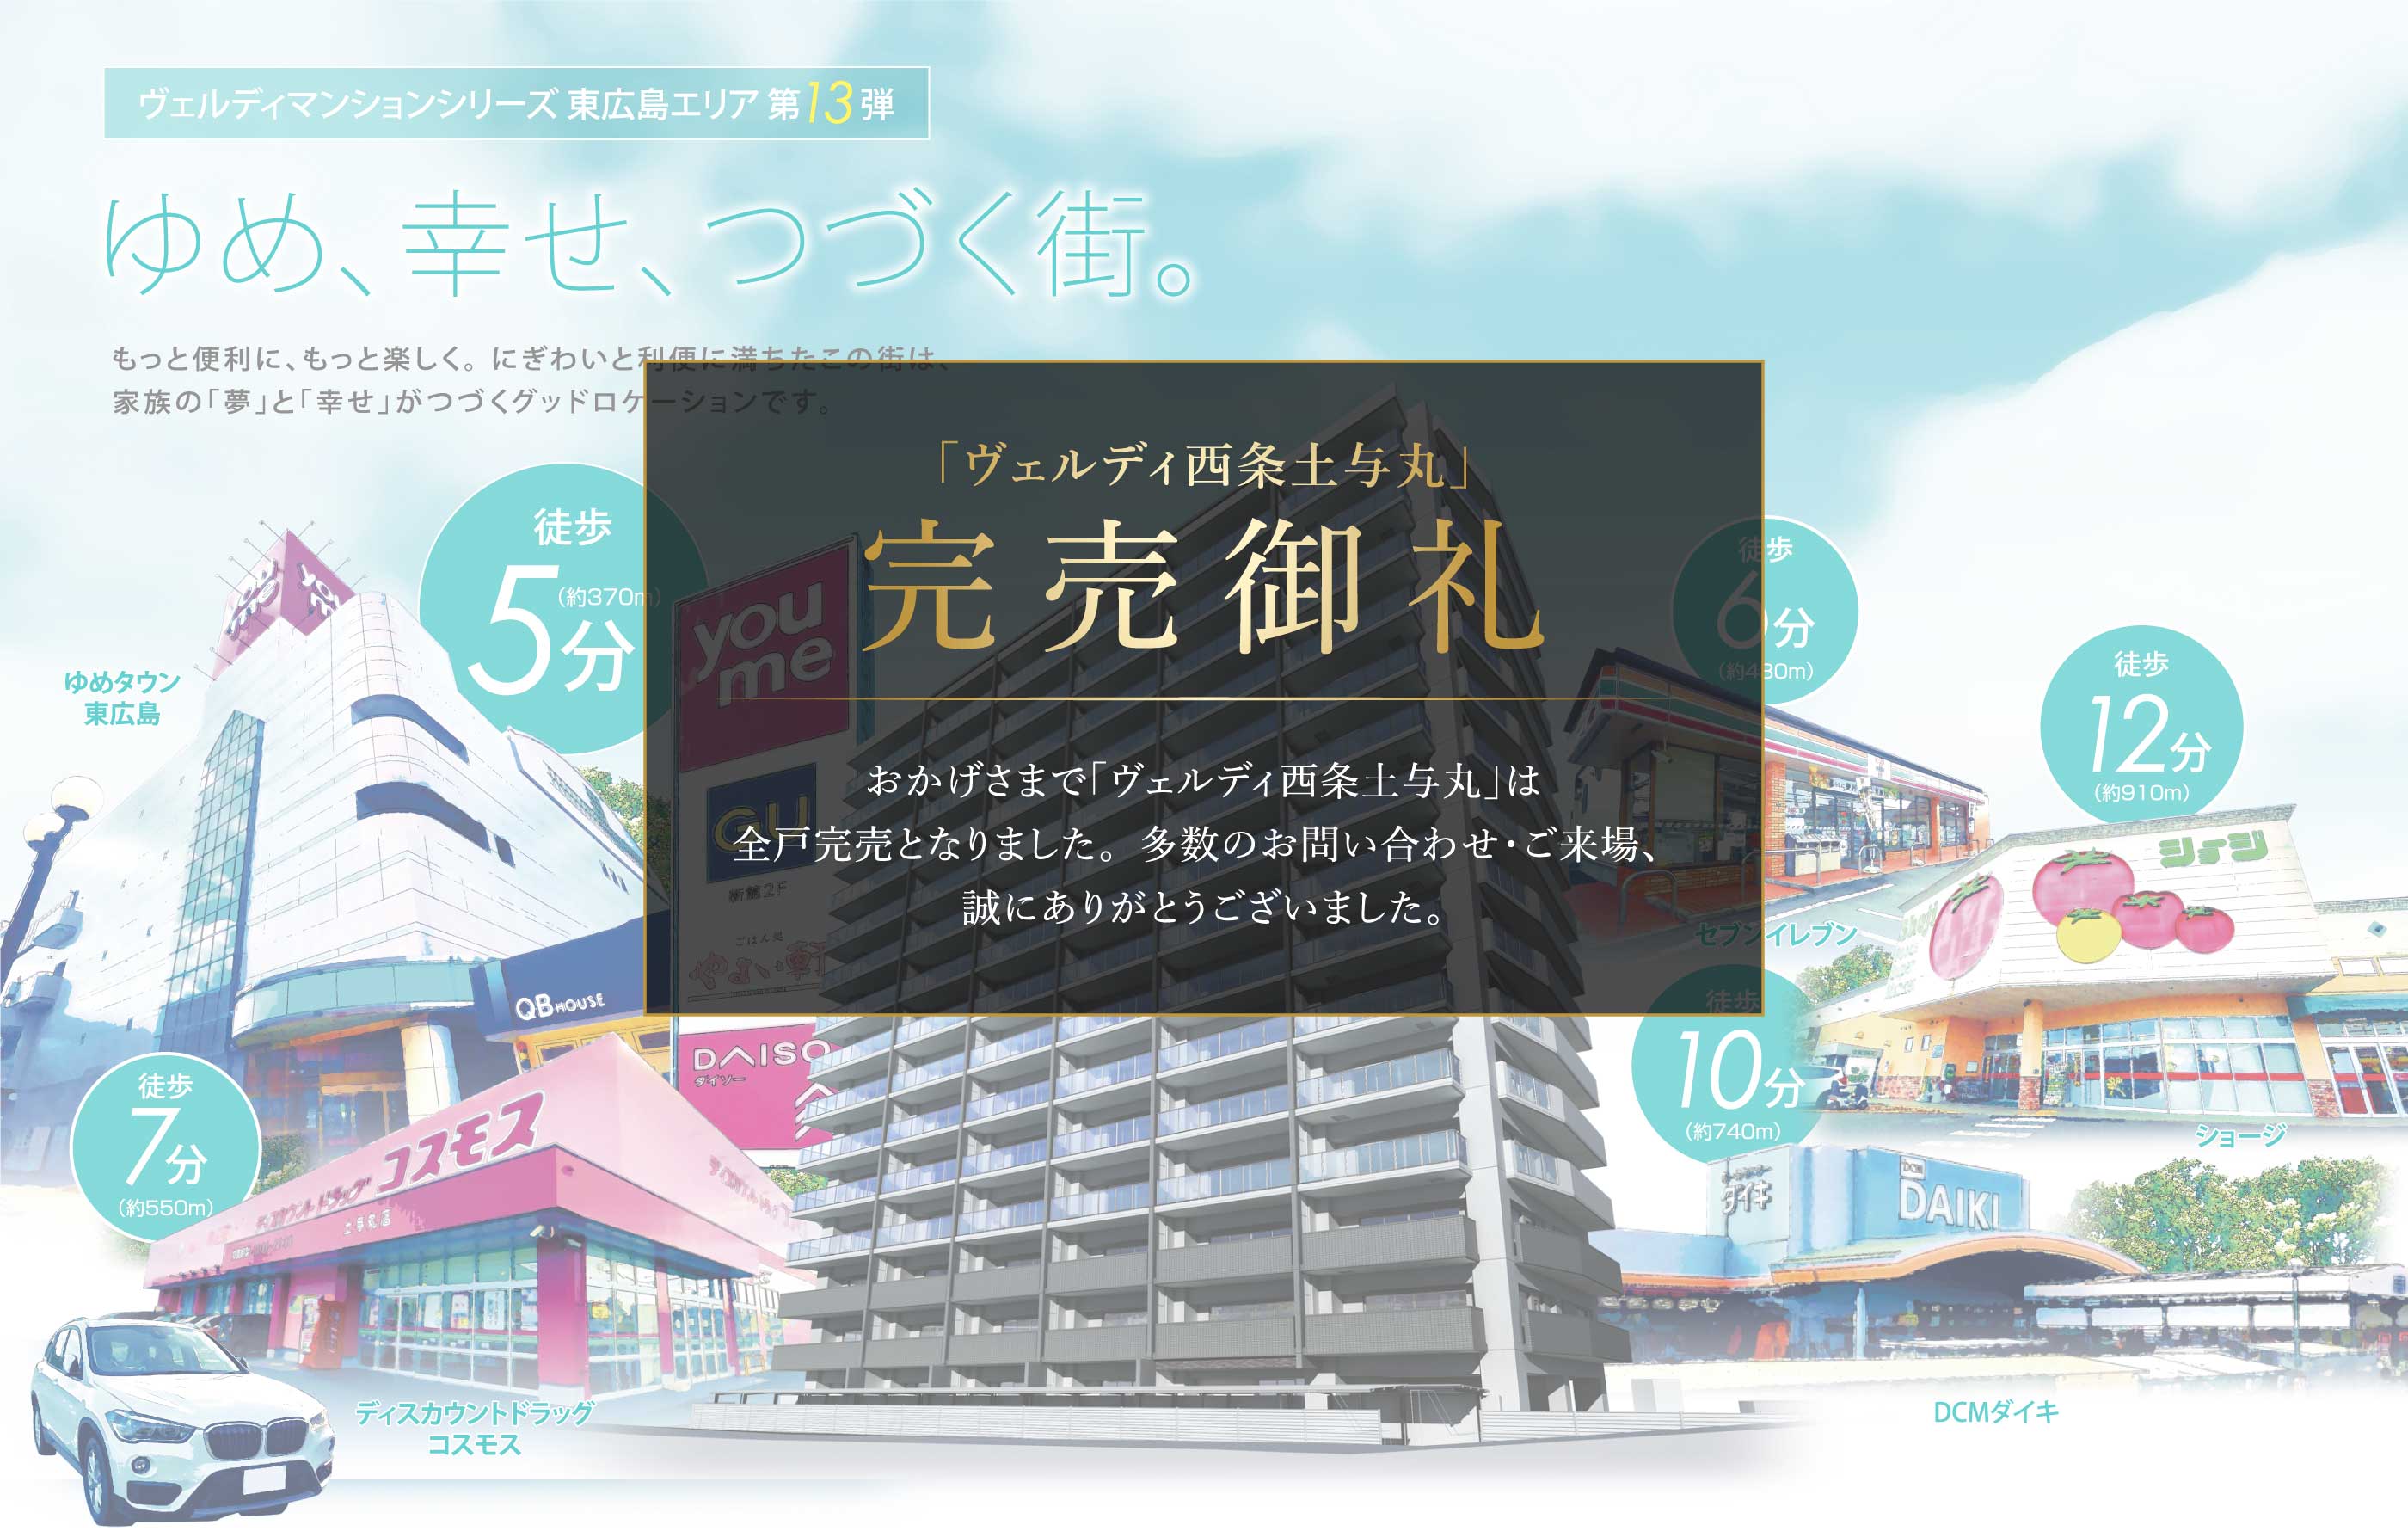 新発表 ヴェルディマンションシリーズ東広島エリア第13弾 ゆめ、幸せ、つづく街。